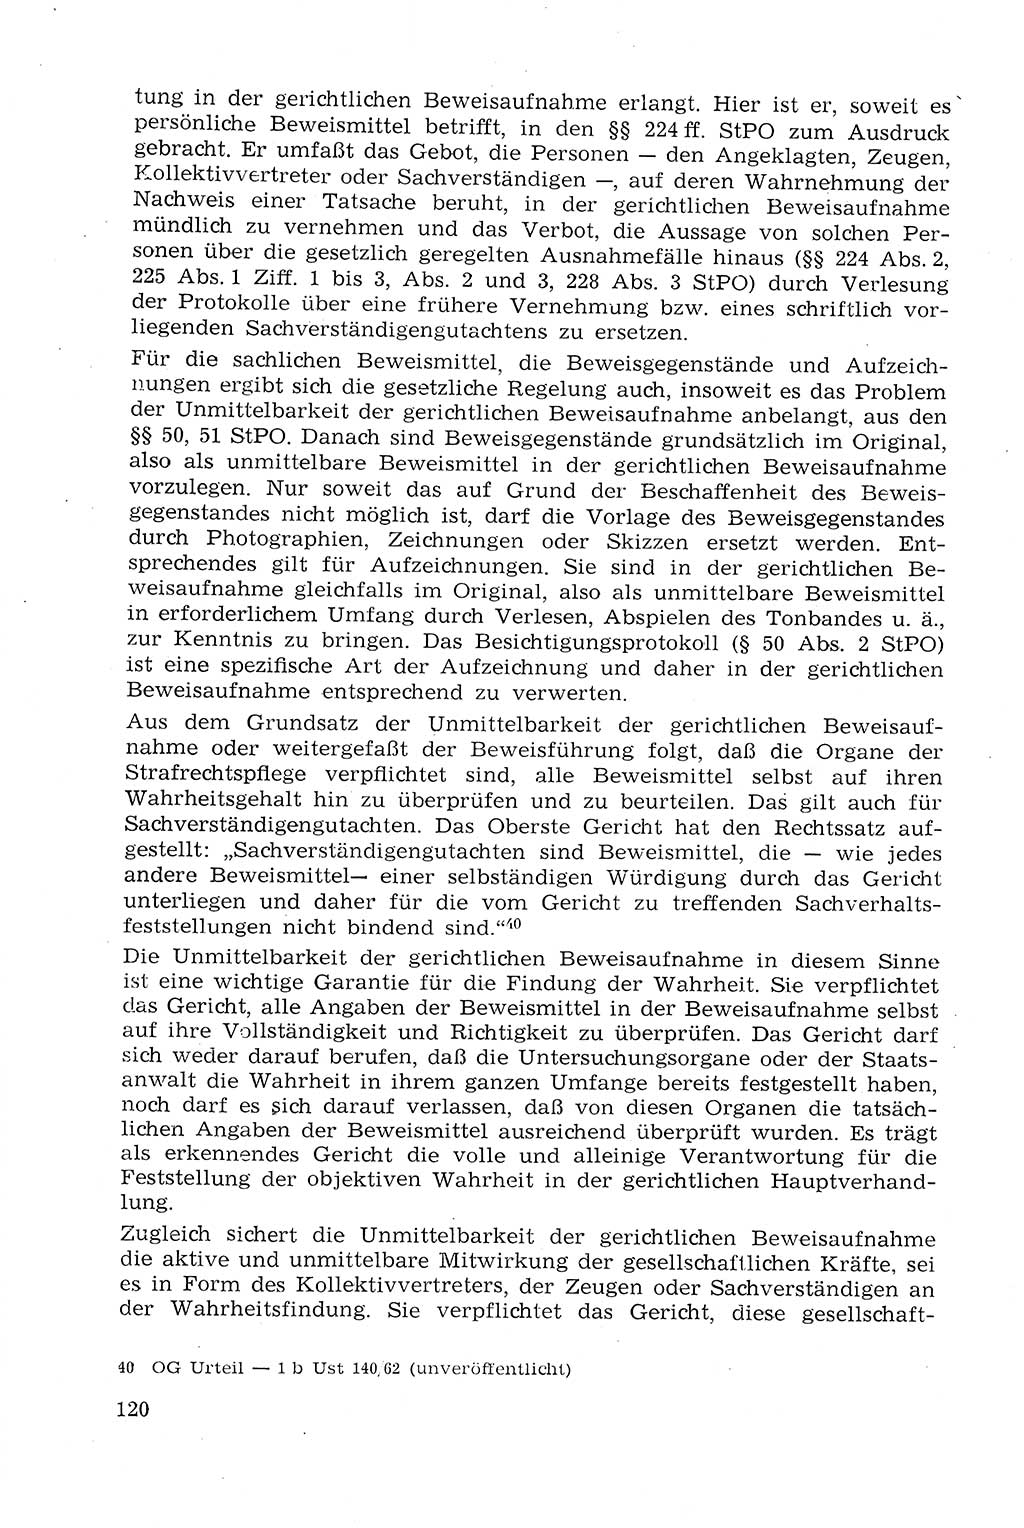 Strafprozeßrecht der DDR (Deutsche Demokratische Republik), Lehrmaterial 1969, Seite 120 (Strafprozeßr. DDR Lehrmat. 1969, S. 120)